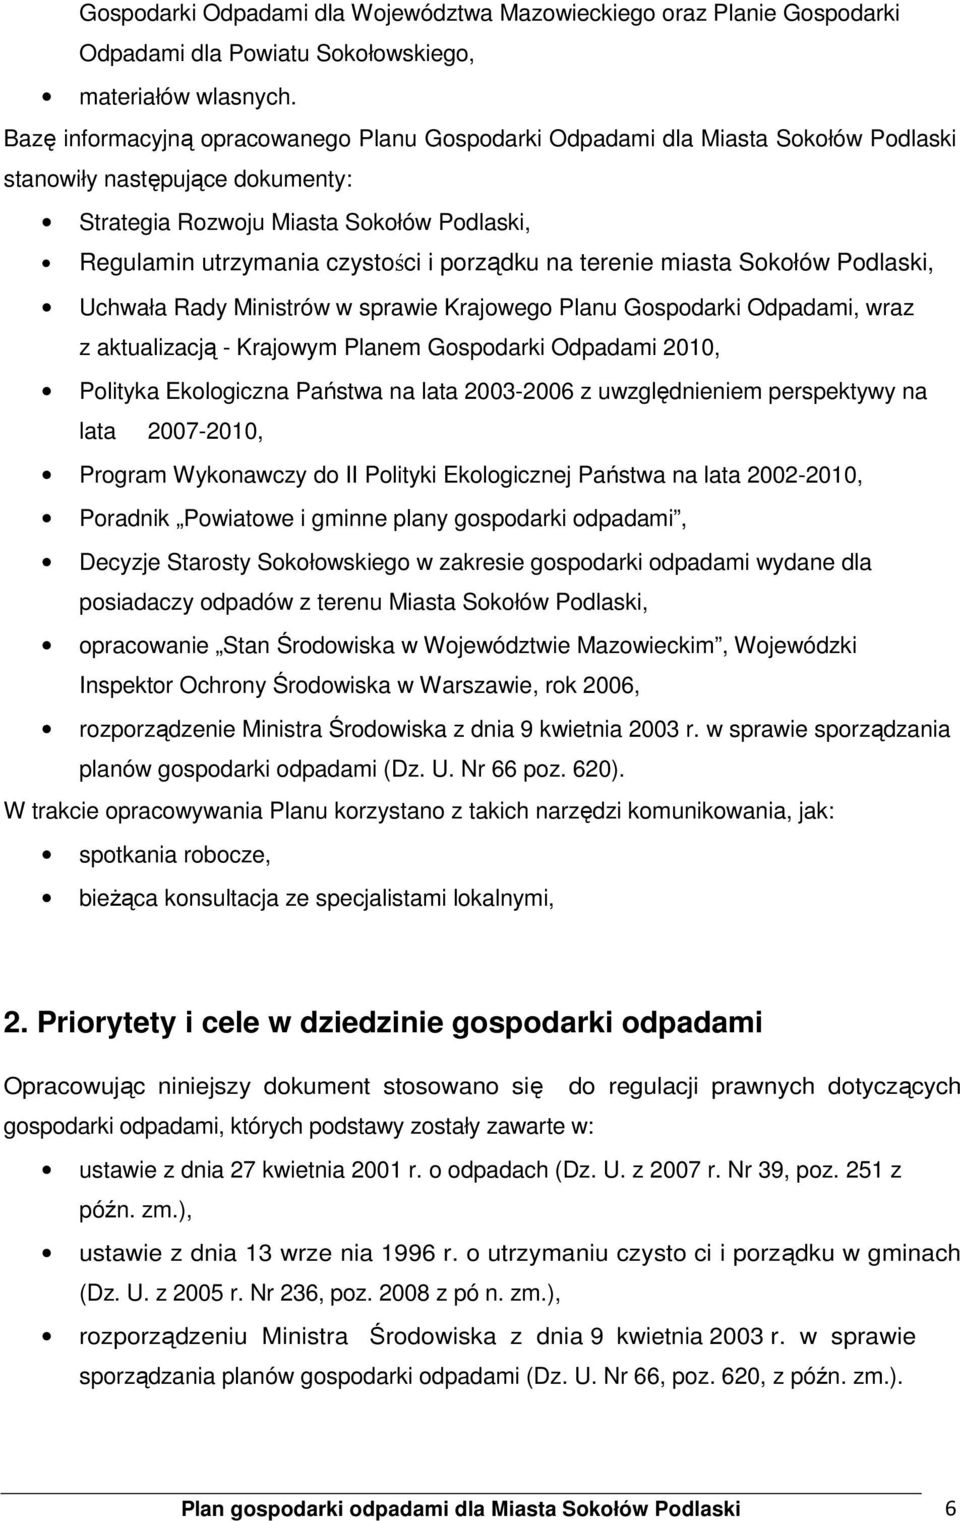 porządku na terenie miasta Sokołów Podlaski, Uchwała Rady Ministrów w sprawie Krajowego Planu Gospodarki Odpadami, wraz z aktualizacją - Krajowym Planem Gospodarki Odpadami 2010, Polityka Ekologiczna